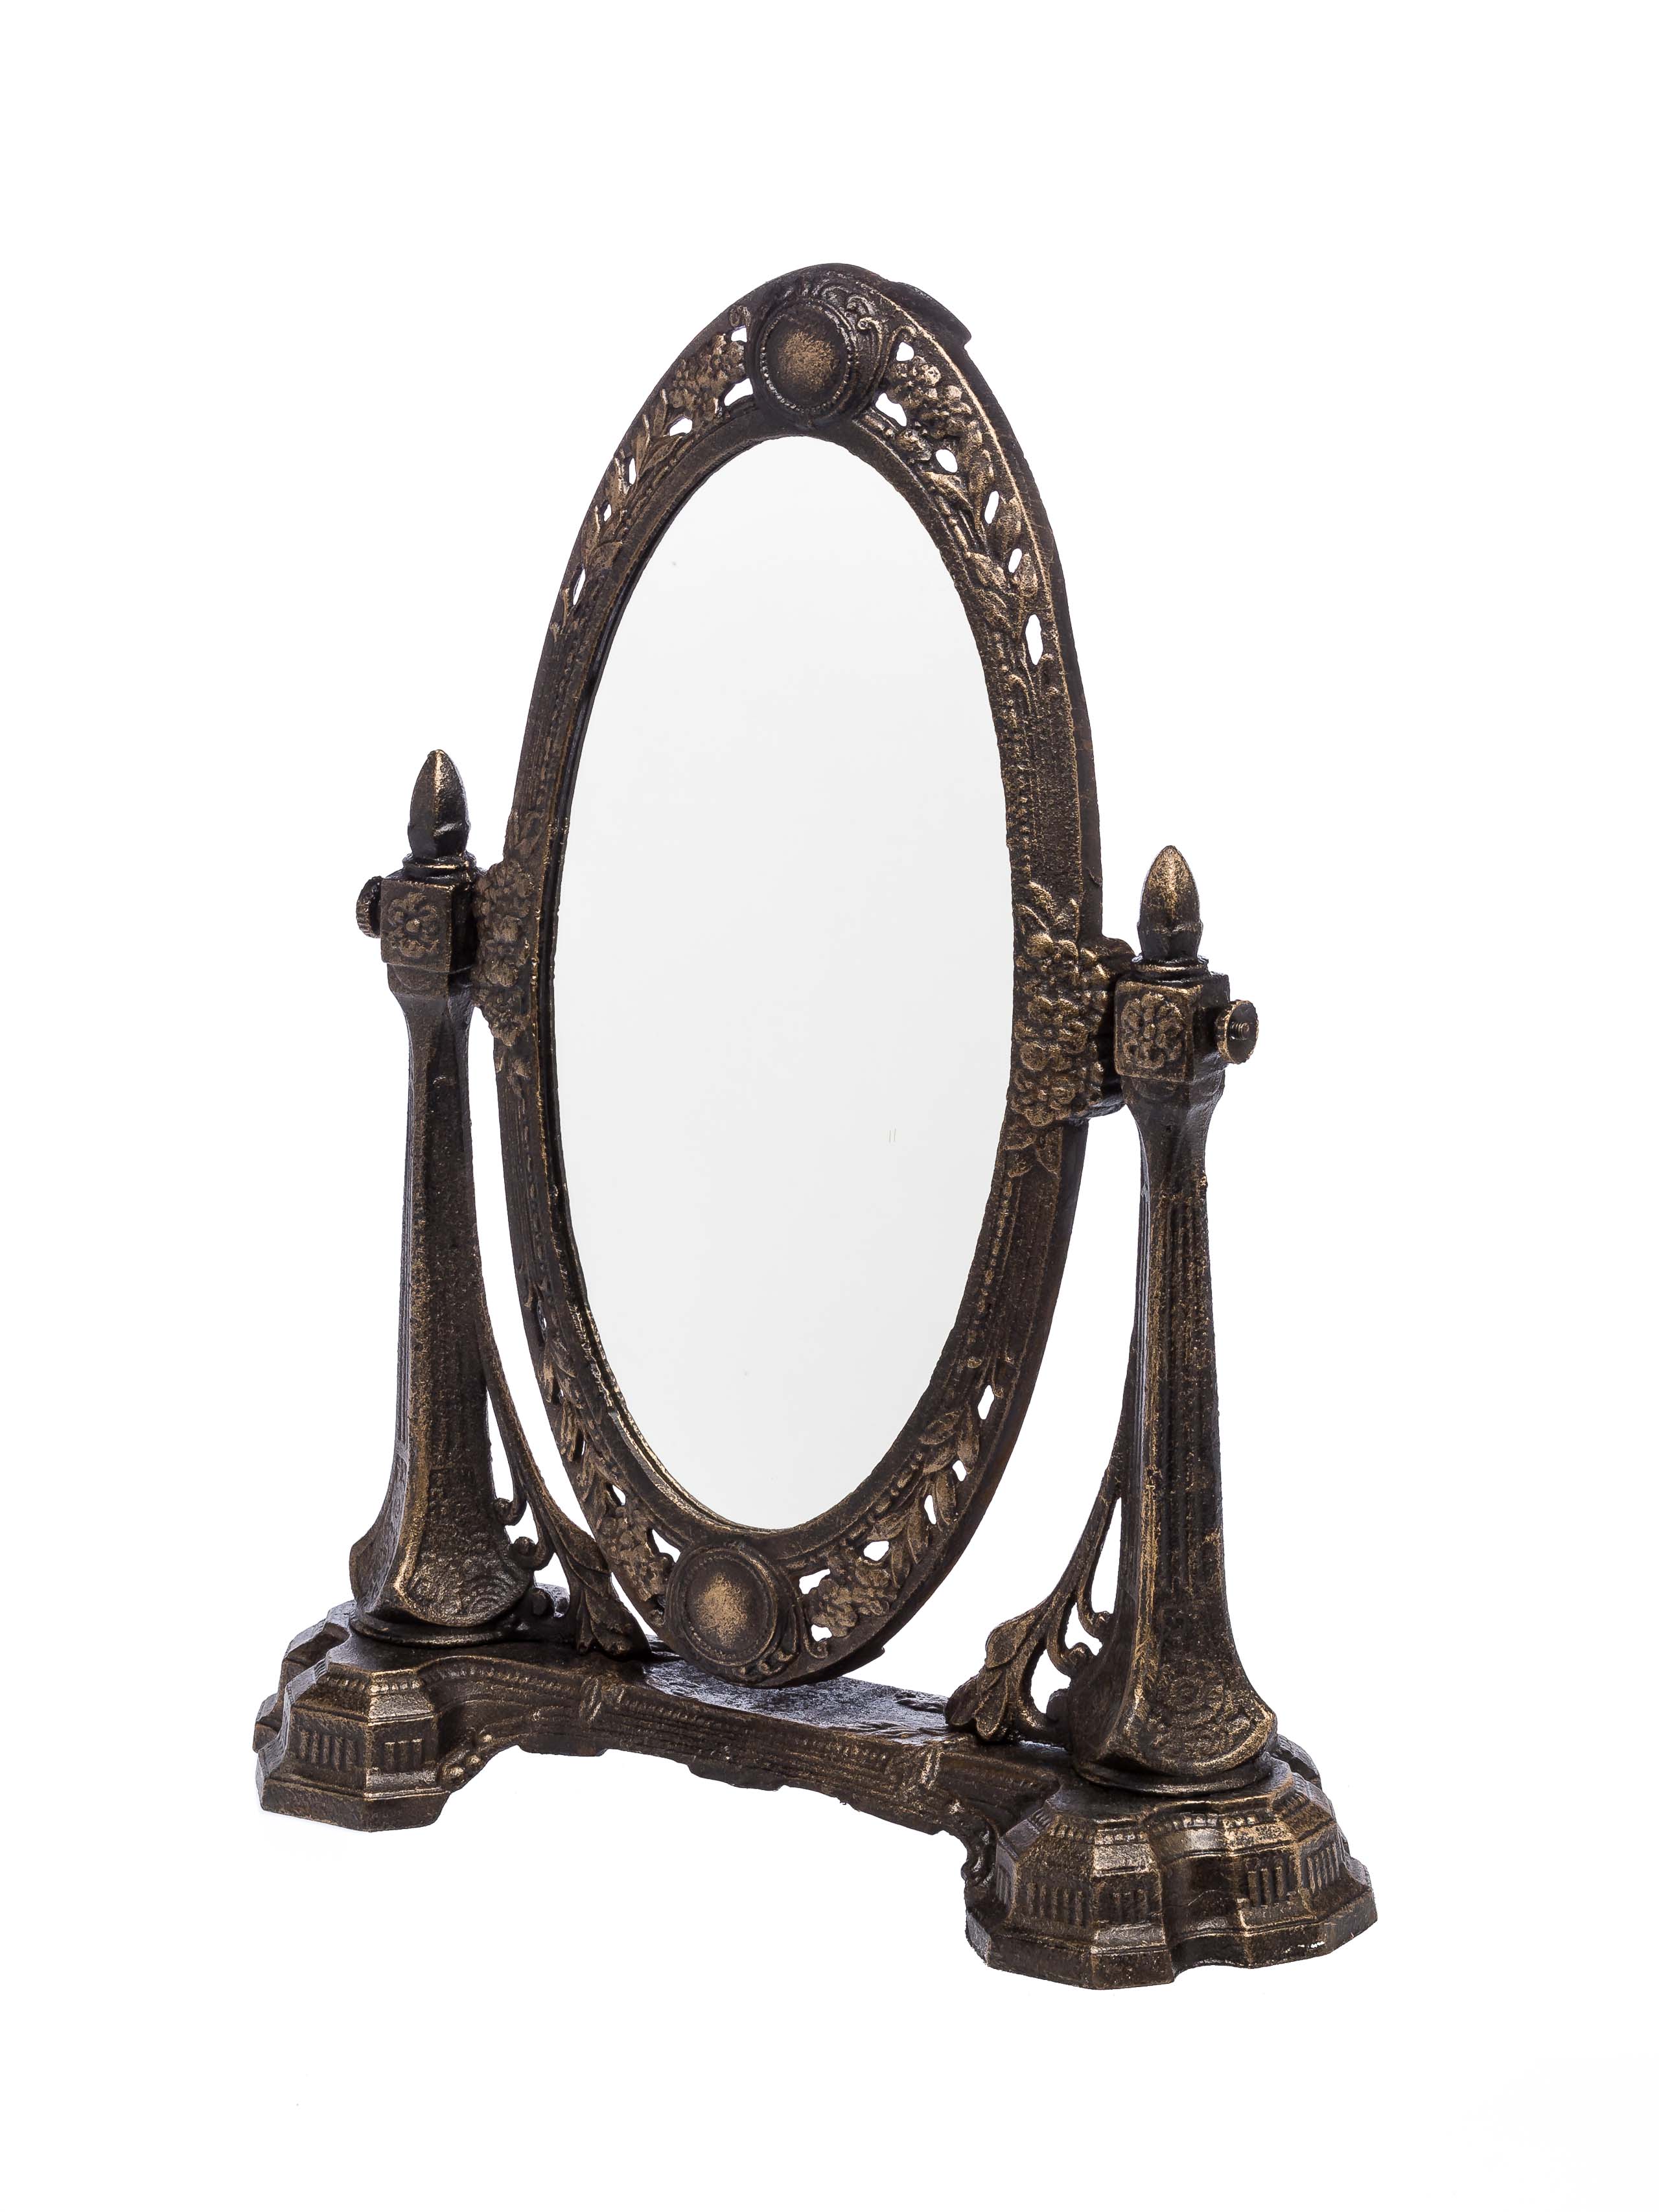 Frisierspiegel Art Nouveau Spiegel Frauenfigur Tischspiegel Kosmetikspiegel 